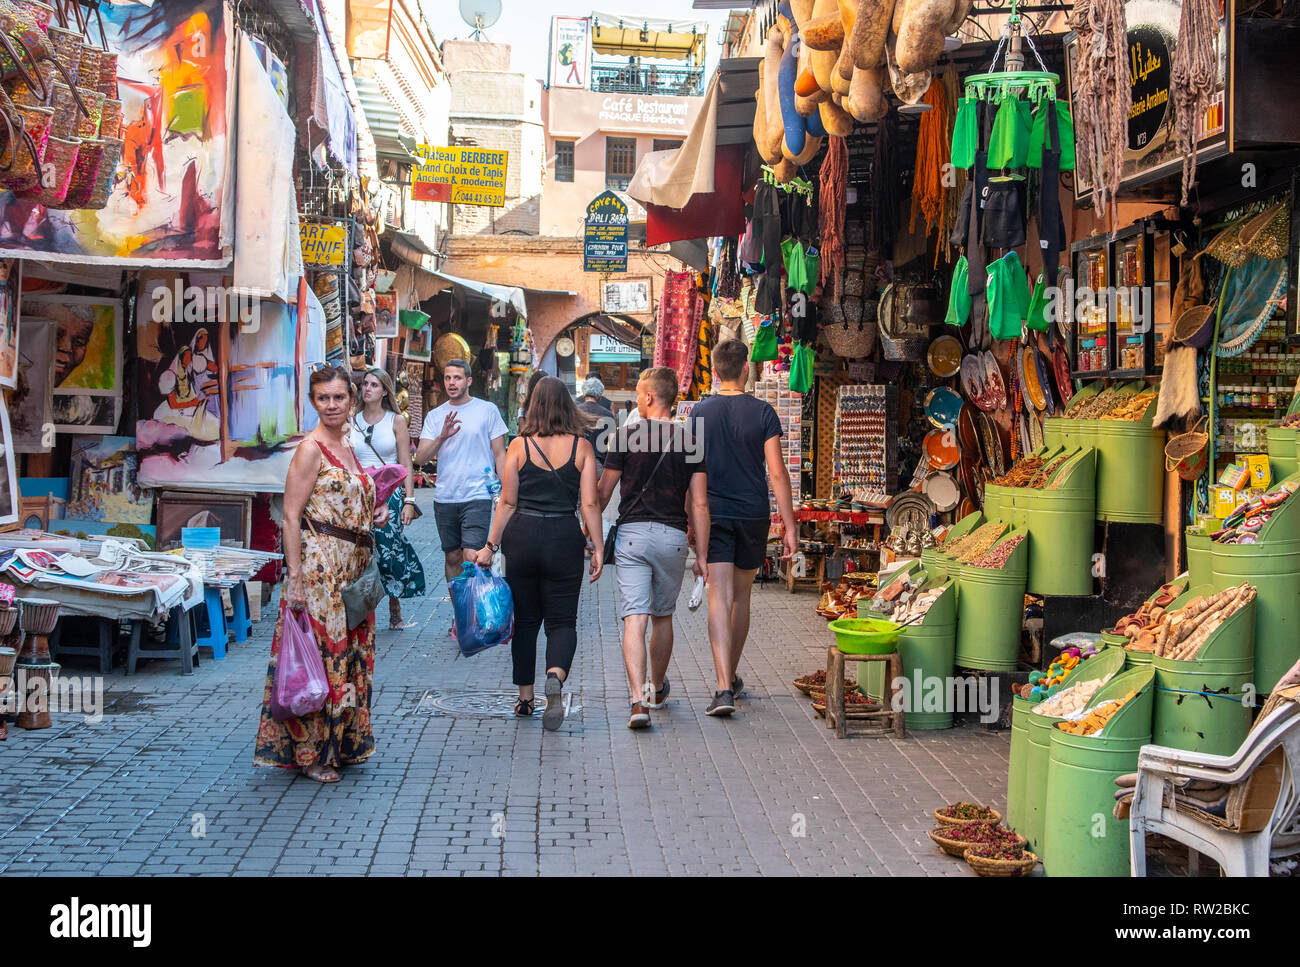 Flânez dans les acheteurs ruelle de médina de Marrakech bordée d'étals de marché de l'art, d'épices, et d'autres marchandises, Maroc Banque D'Images